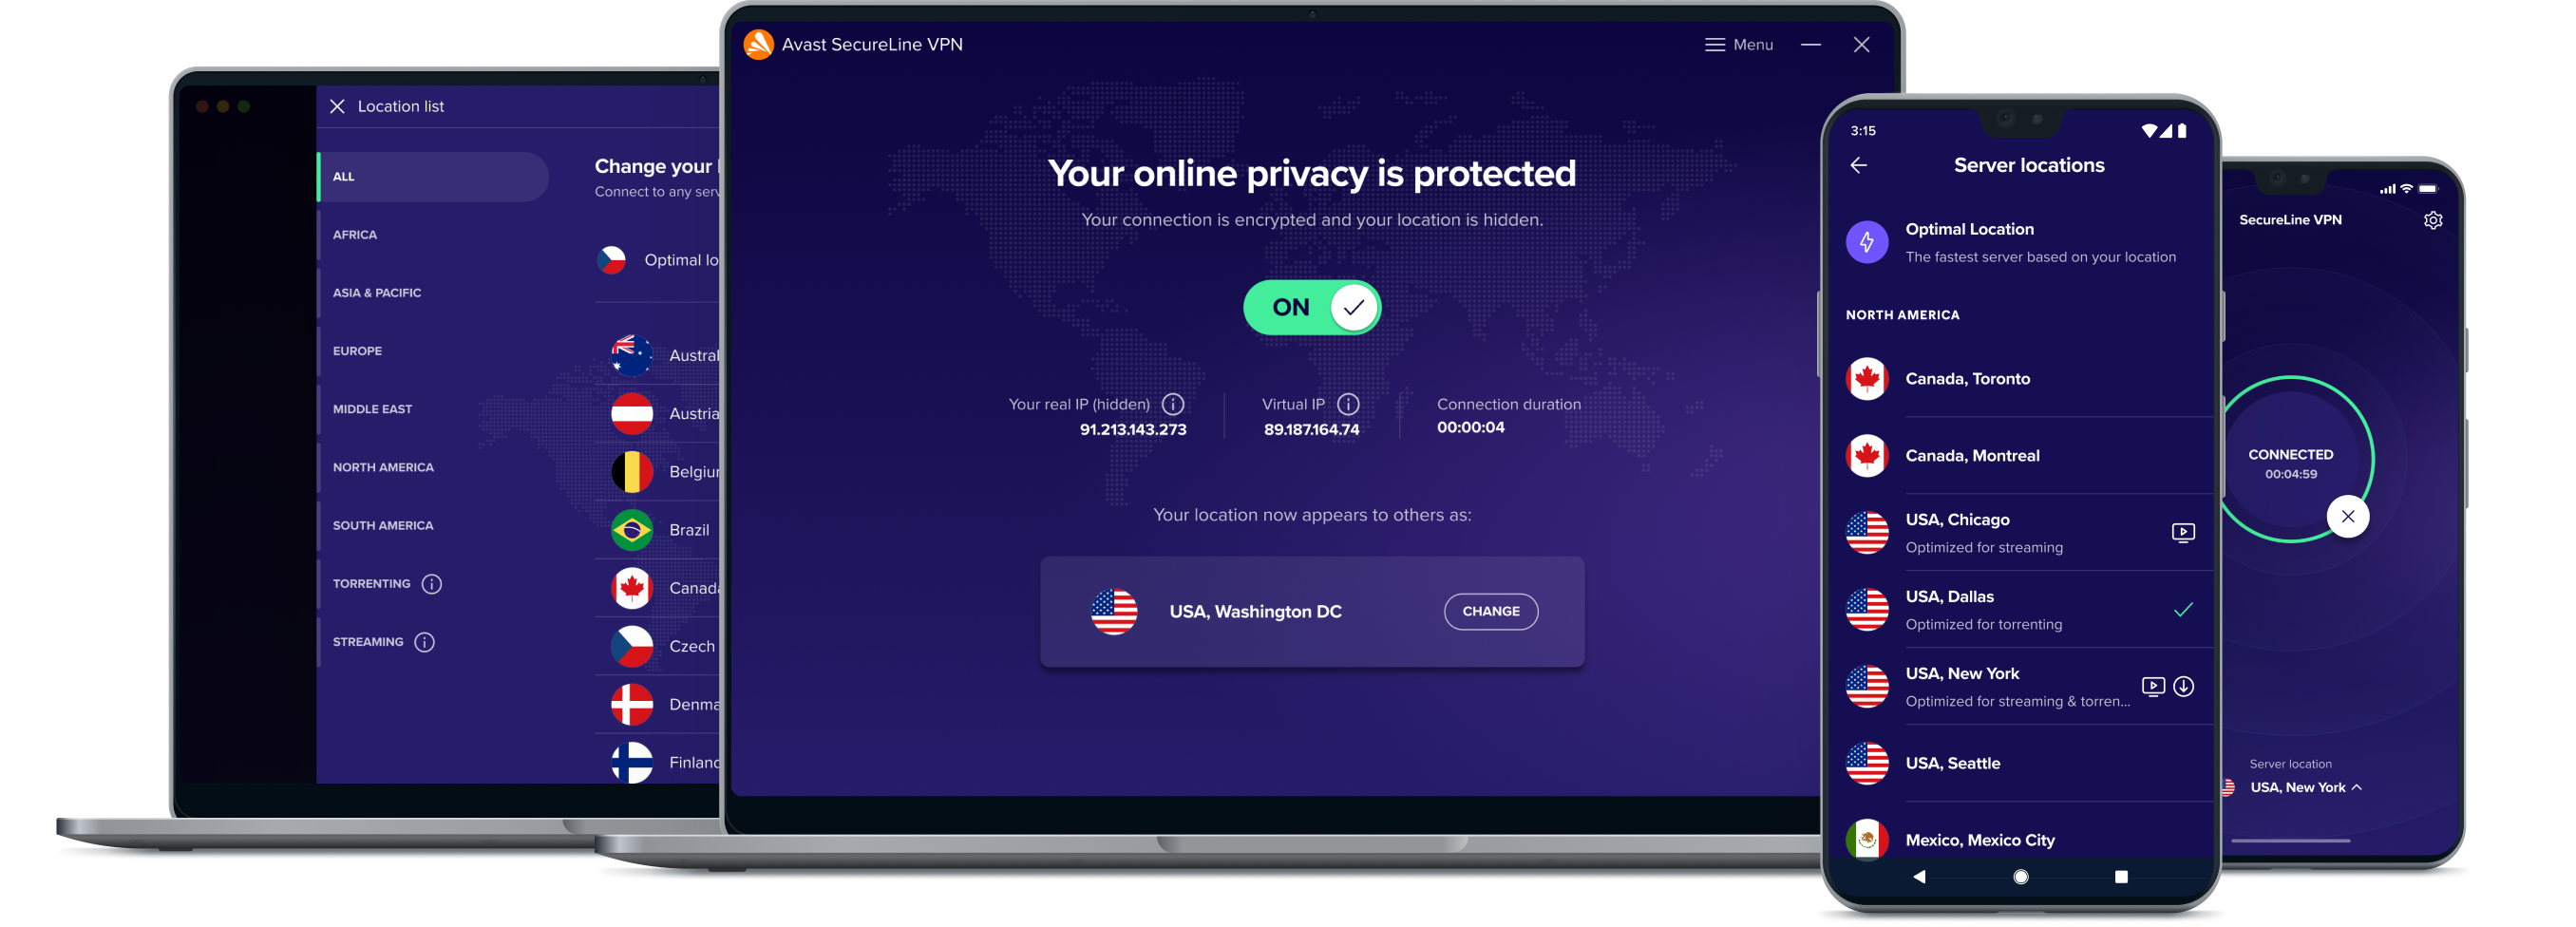 Dapatkan kebebasan dalam talian yang lebih hebat dengan perkhidmatan VPN kami